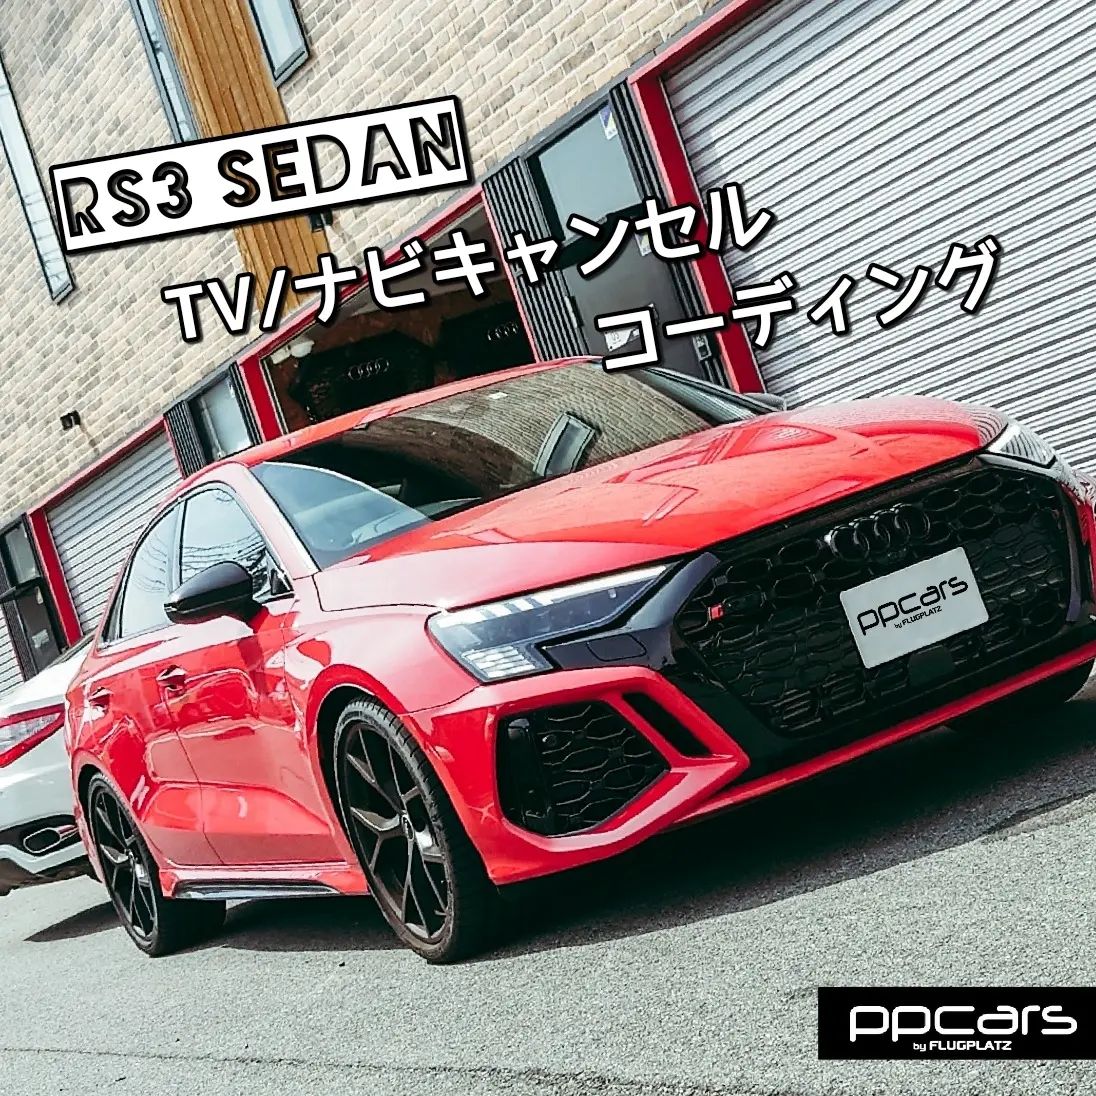 Audi RS3 (8Y) Sedan x コーディング (TVキャンセル/ナビキャンセル)